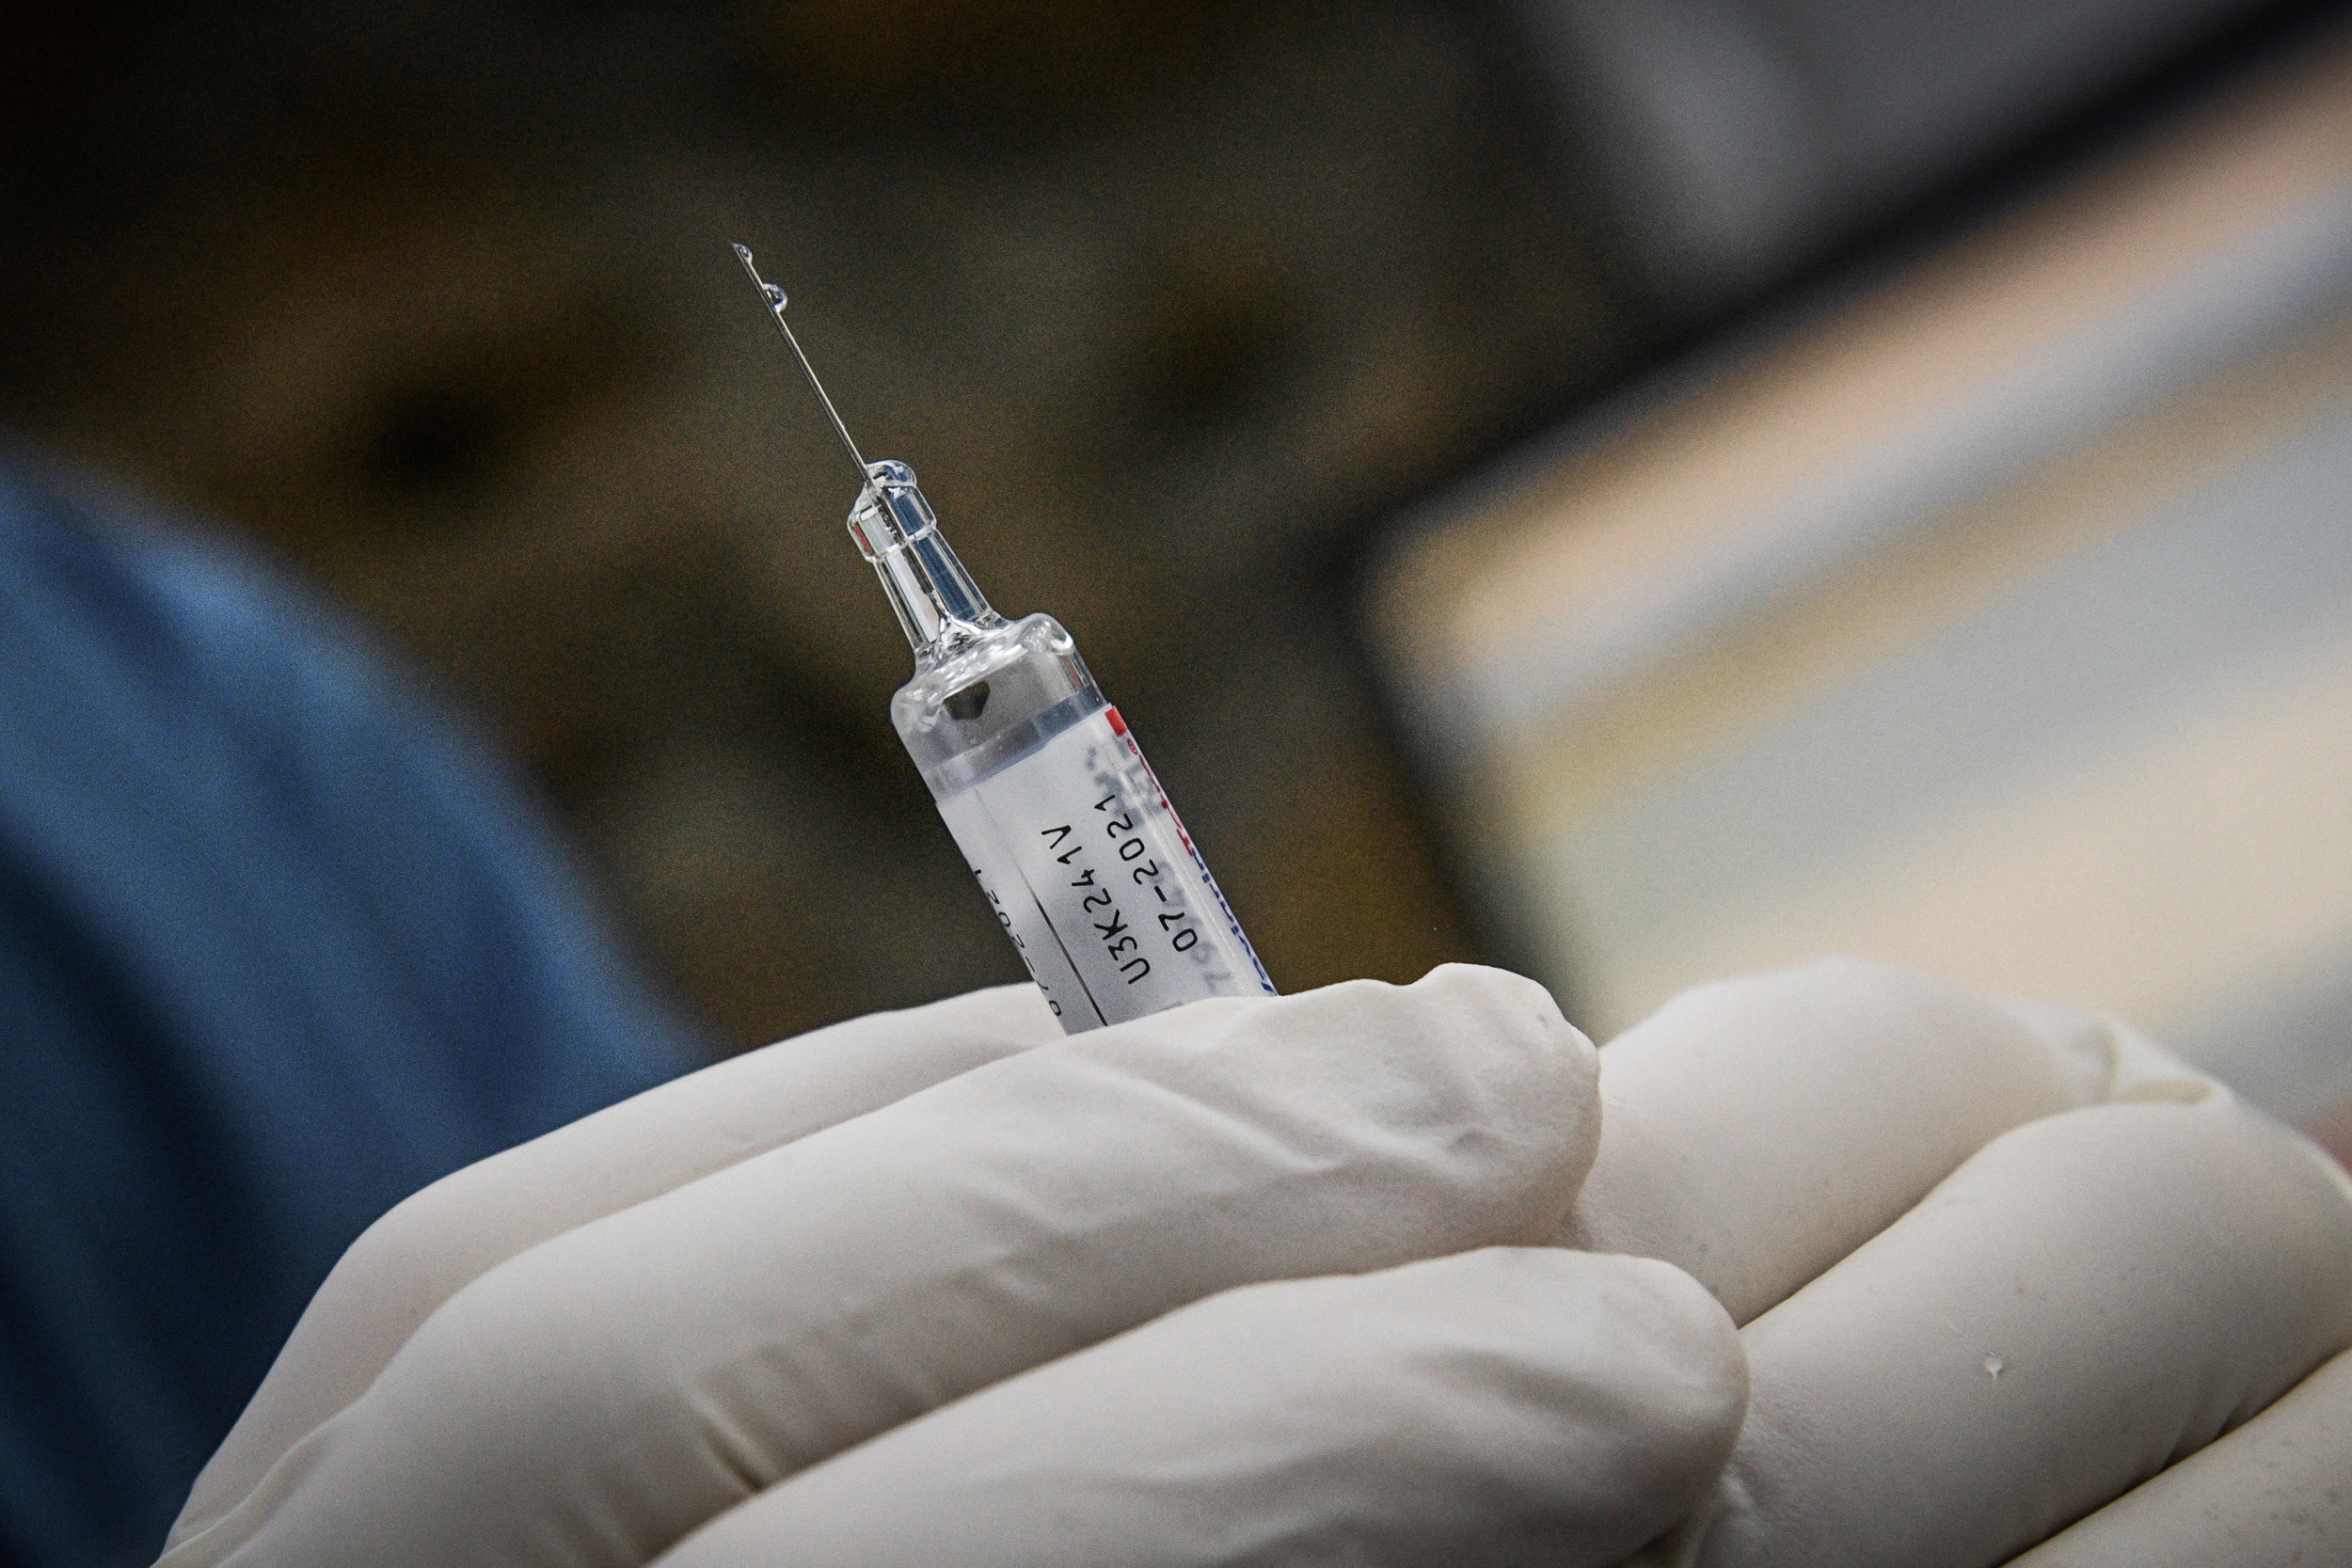 Συνεχίζεται ο «πόλεμος» για τα εμβόλια: Η ΕΕ απειλεί με «μπλόκο» τις εξαγωγές της Pfizer στη Βρετανία